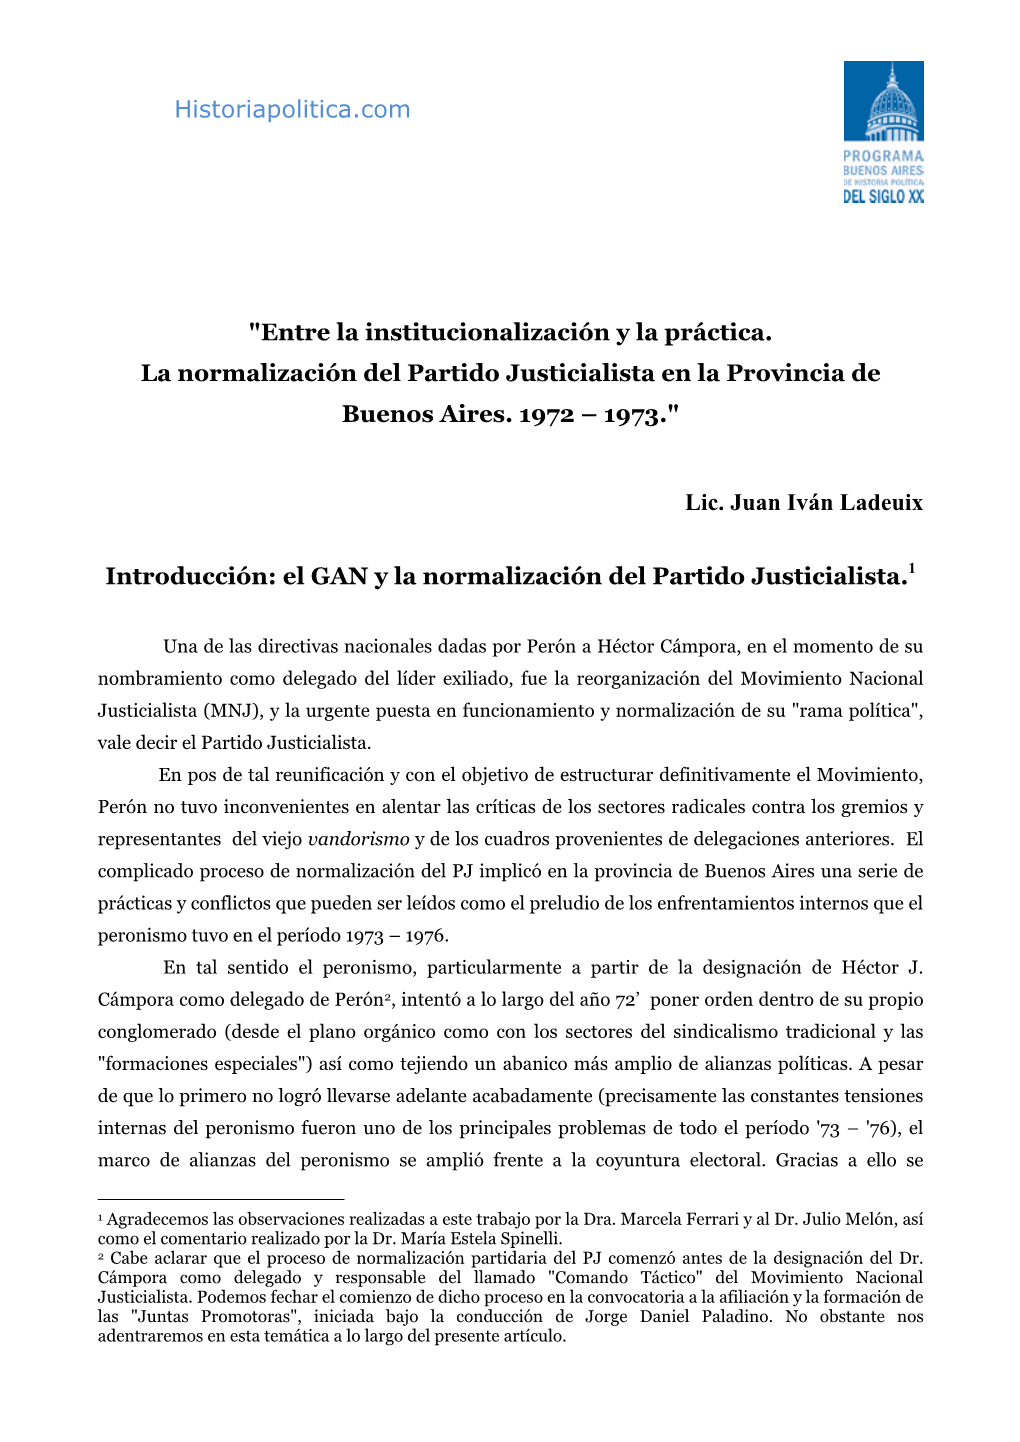 Entre La Institucionalización Y La Práctica. La Normalización Del Partido Justicialista En La Provincia De Buenos Aires